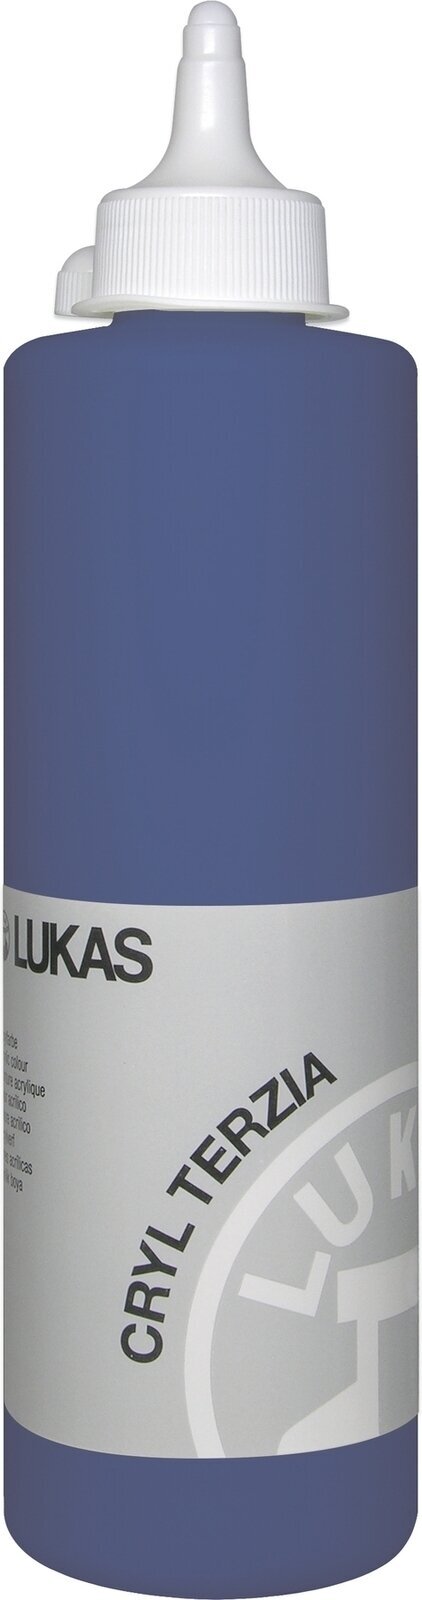 Acrylfarbe Lukas Cryl Terzia Acrylic Paint Plastic Bottle Acrylfarbe Cobalt Blue Hue 500 ml 1 Stck